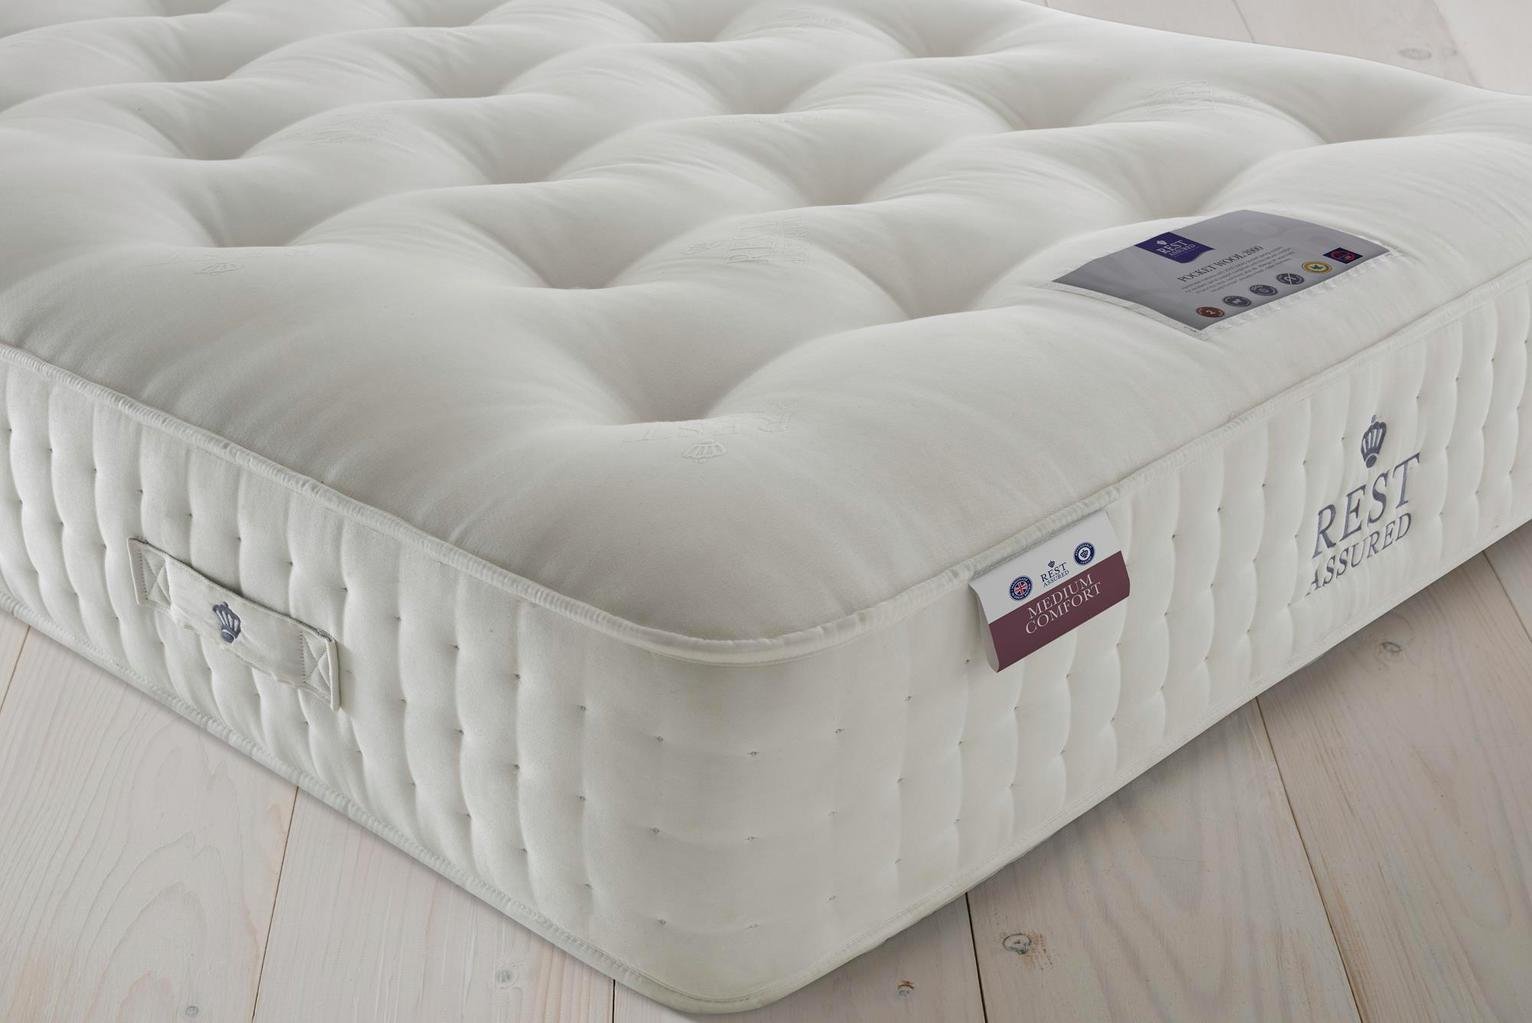 rest assured mattress reviews uk